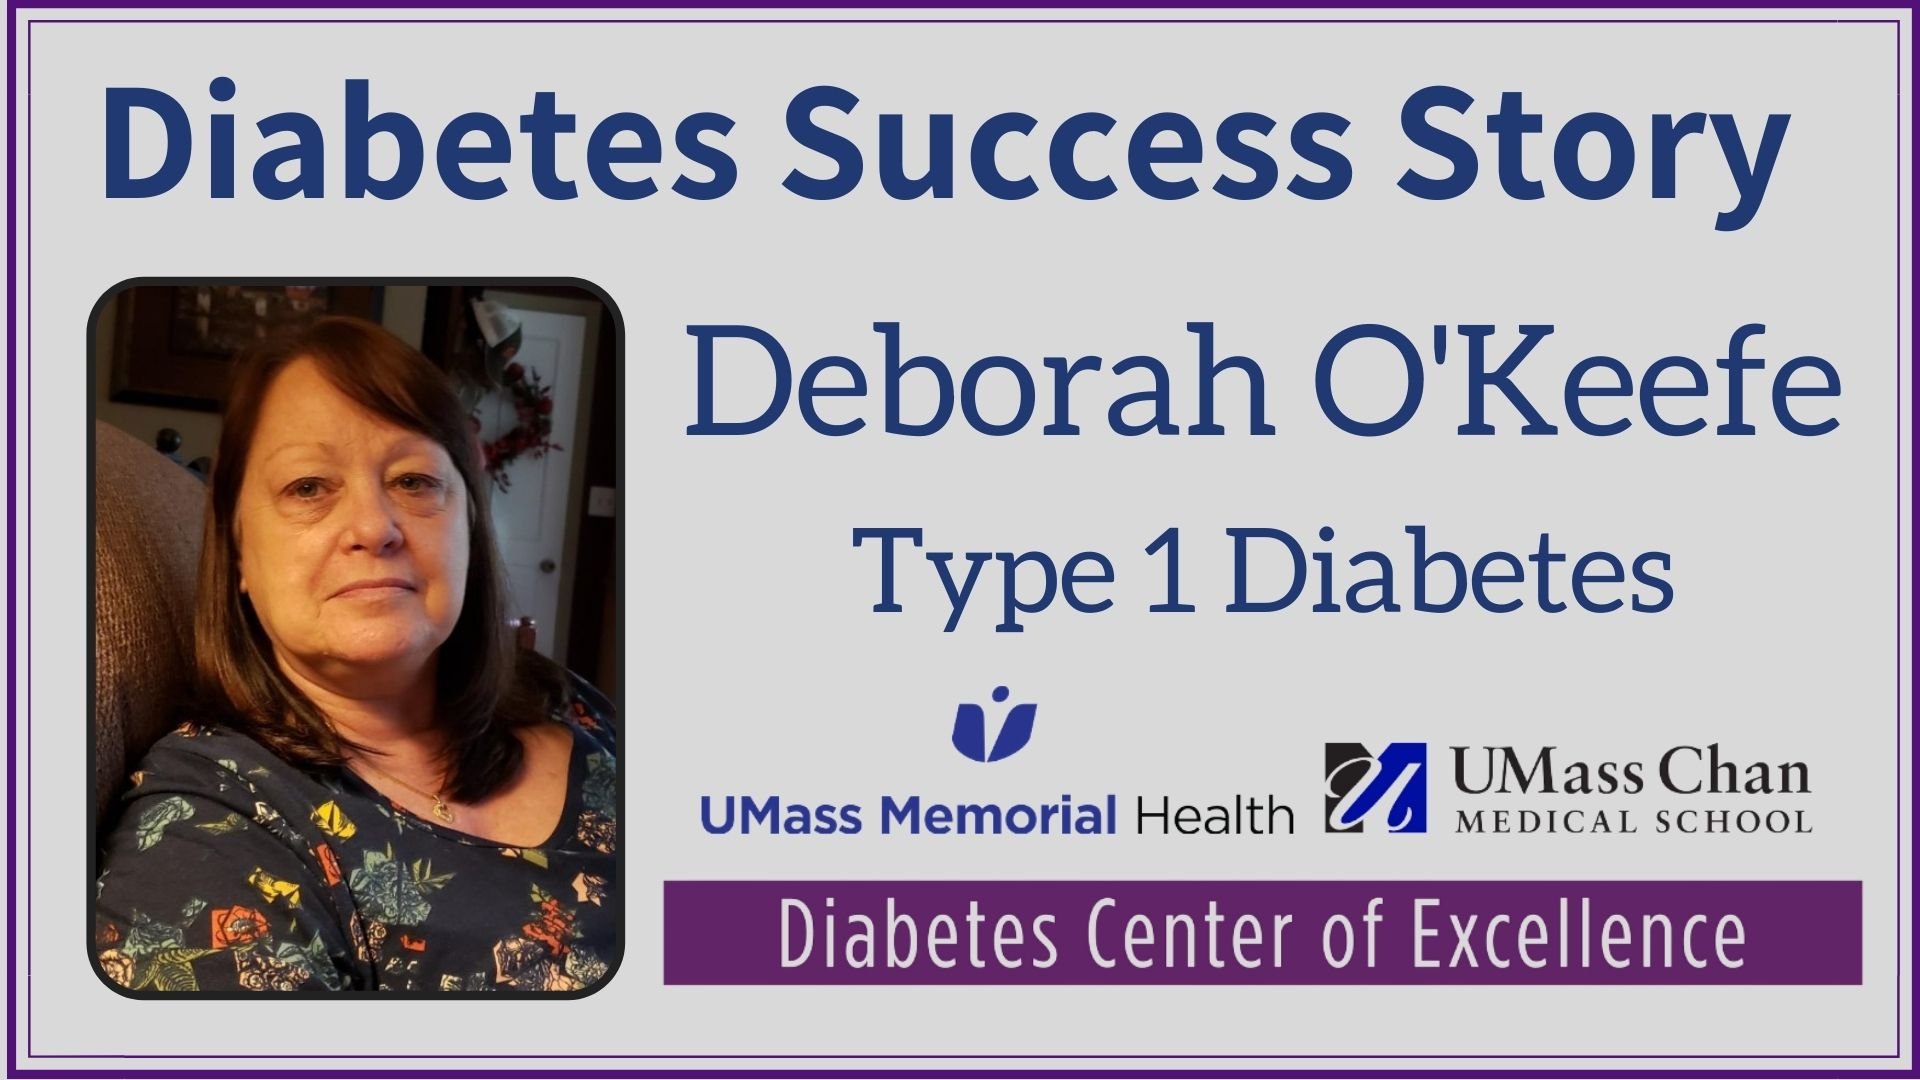 deborah-okeefe-type-1-diabetes.jpg